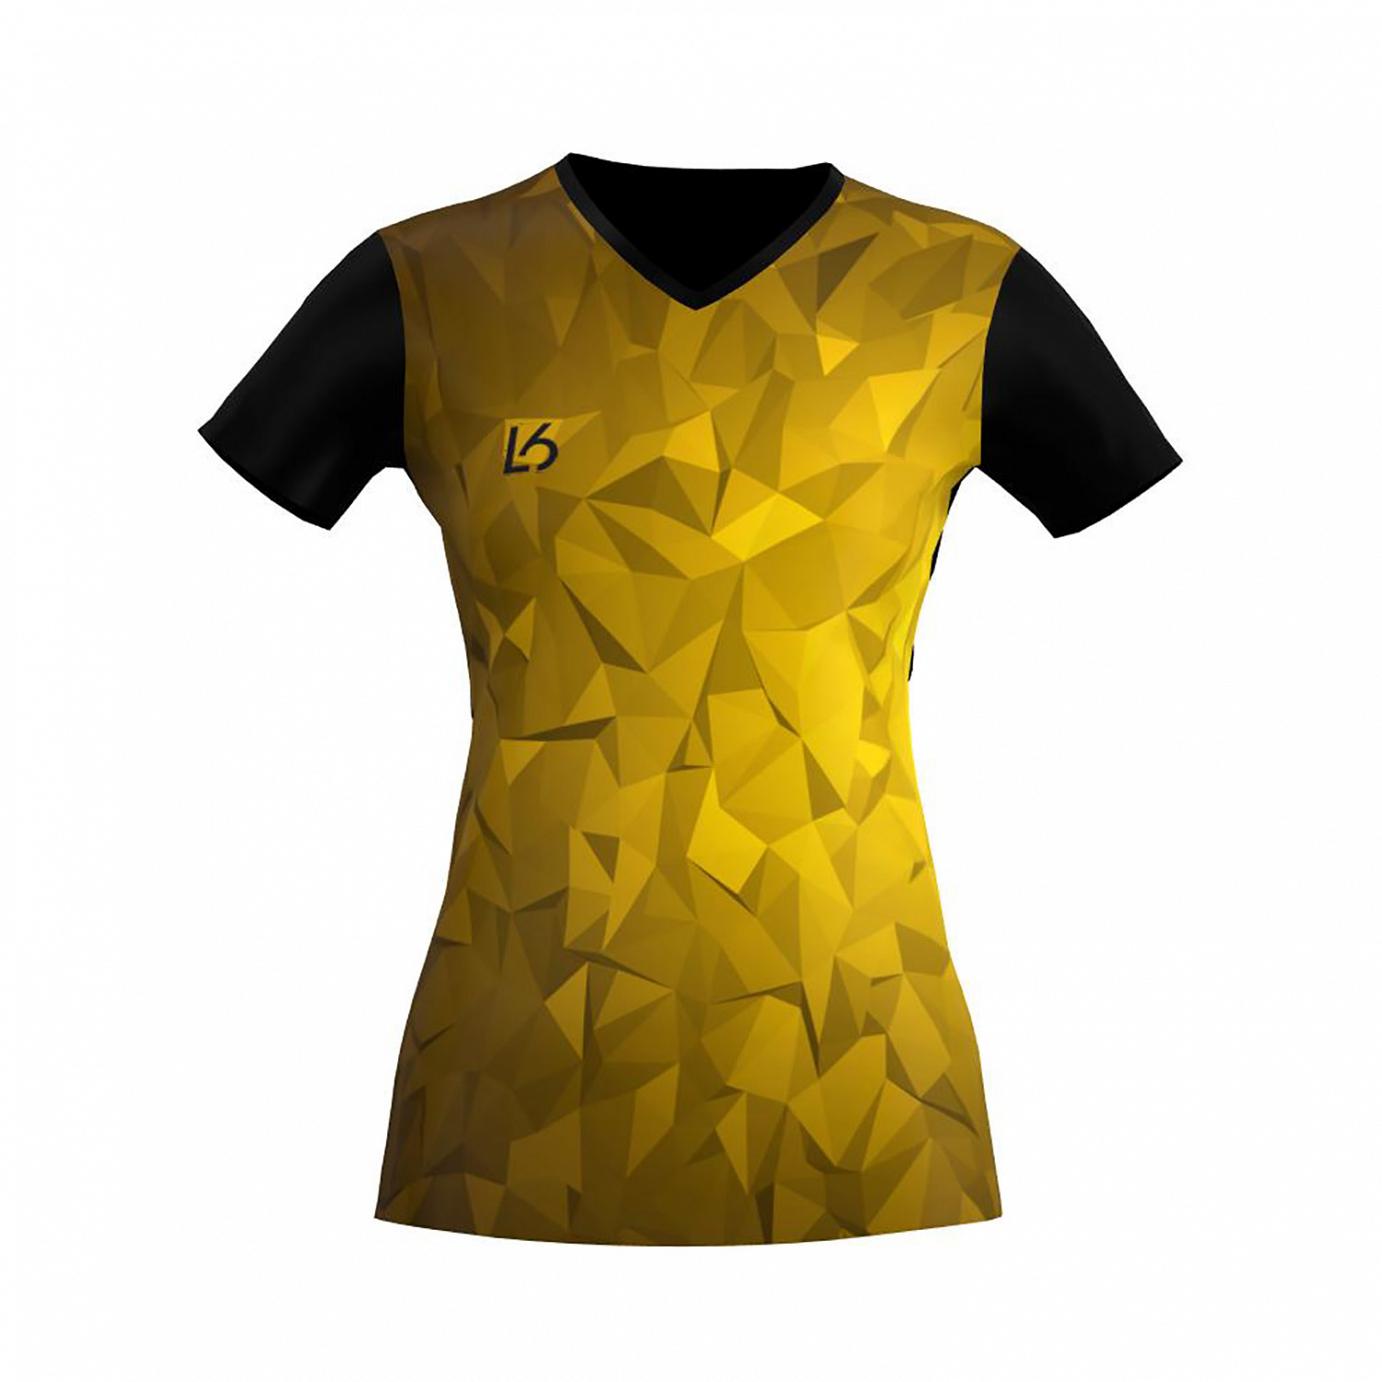 L6 V-Neck Trikot Women - Polygon Yellow